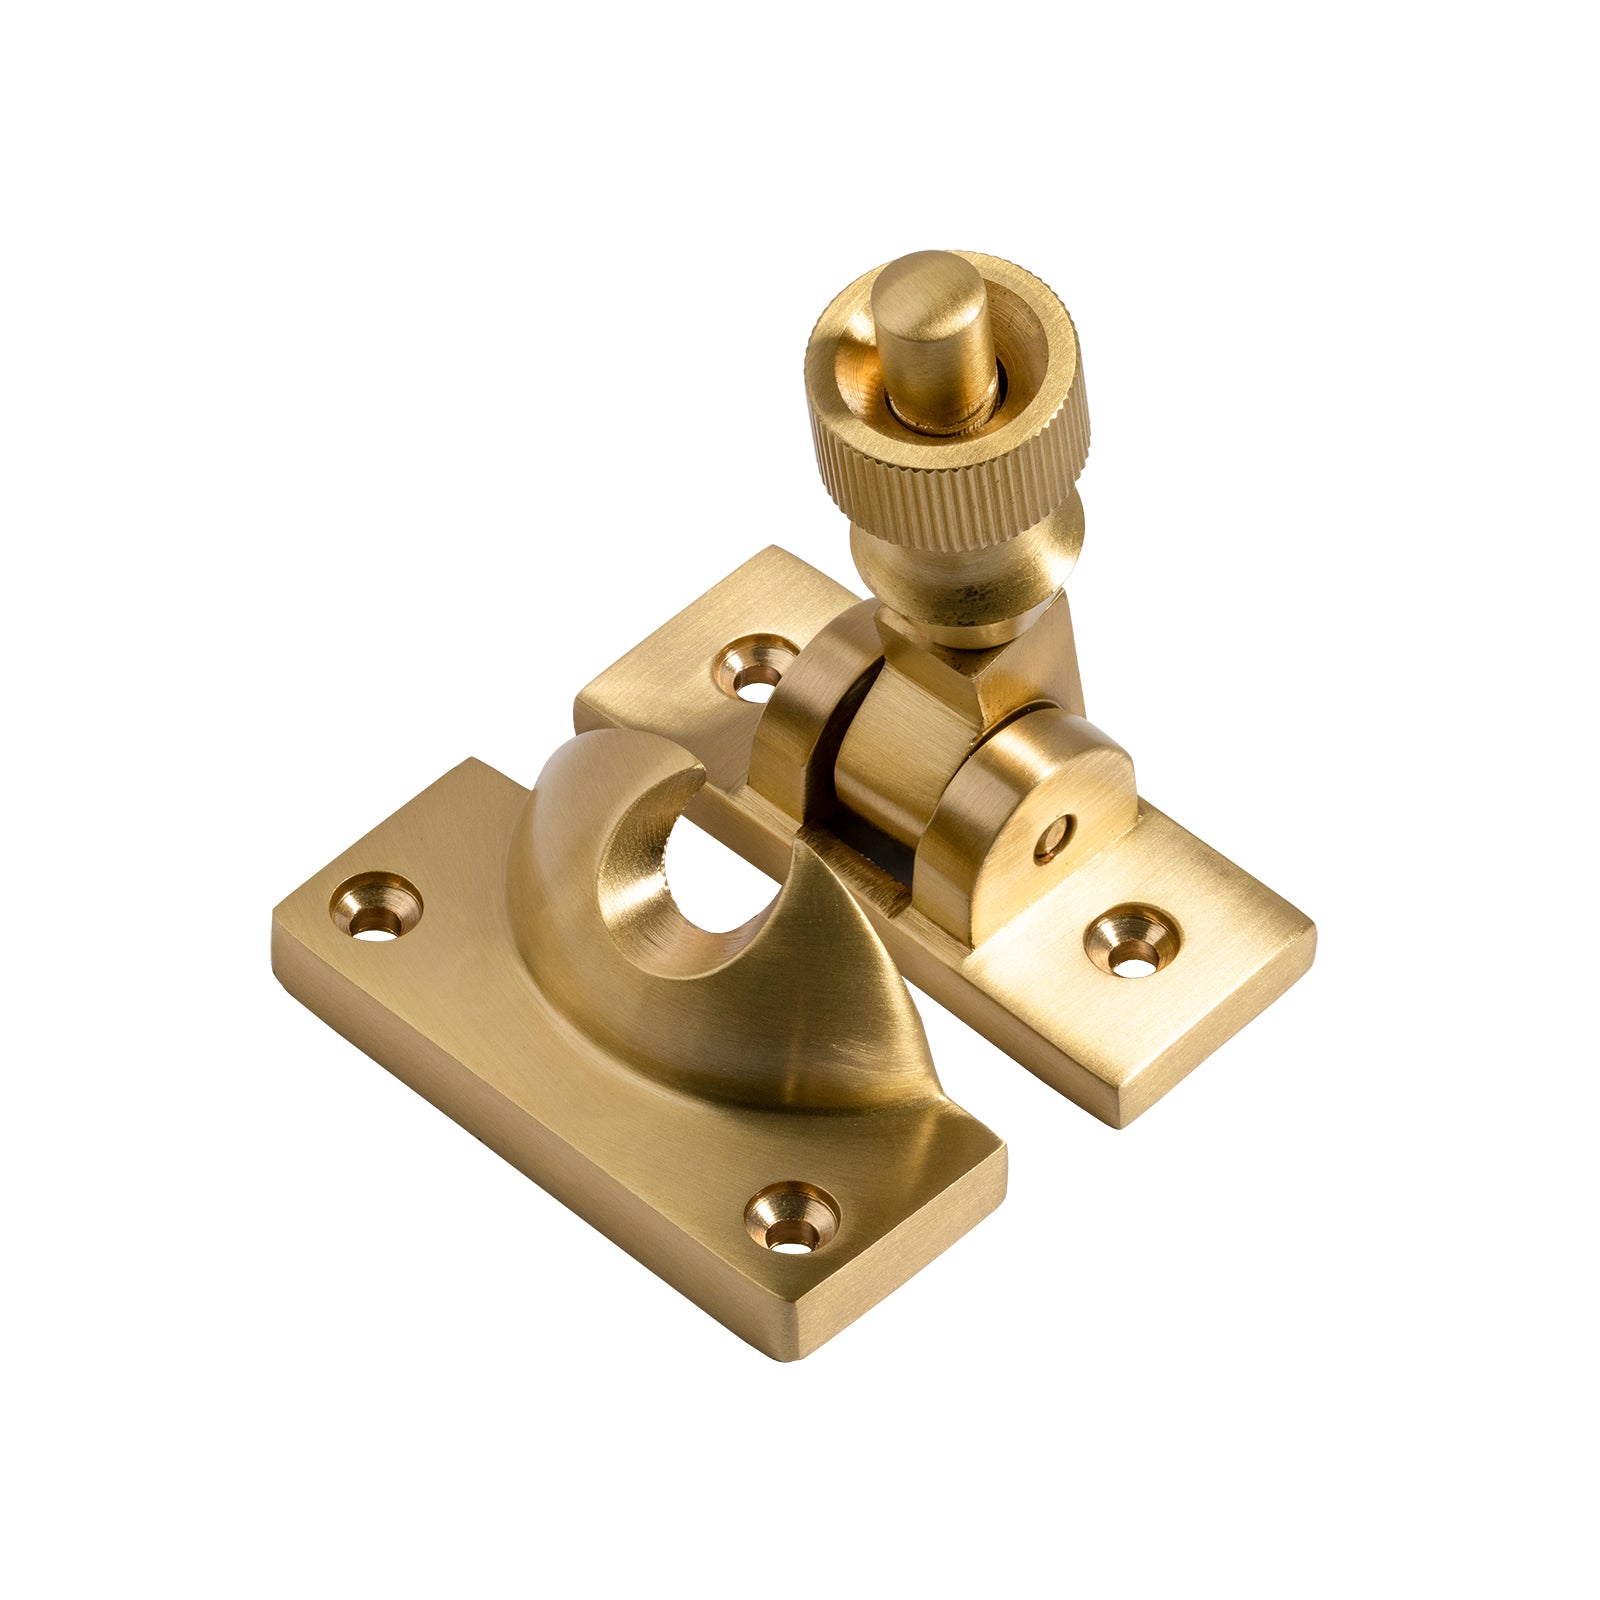 Satin brass brighton sash fastener lock SHOW